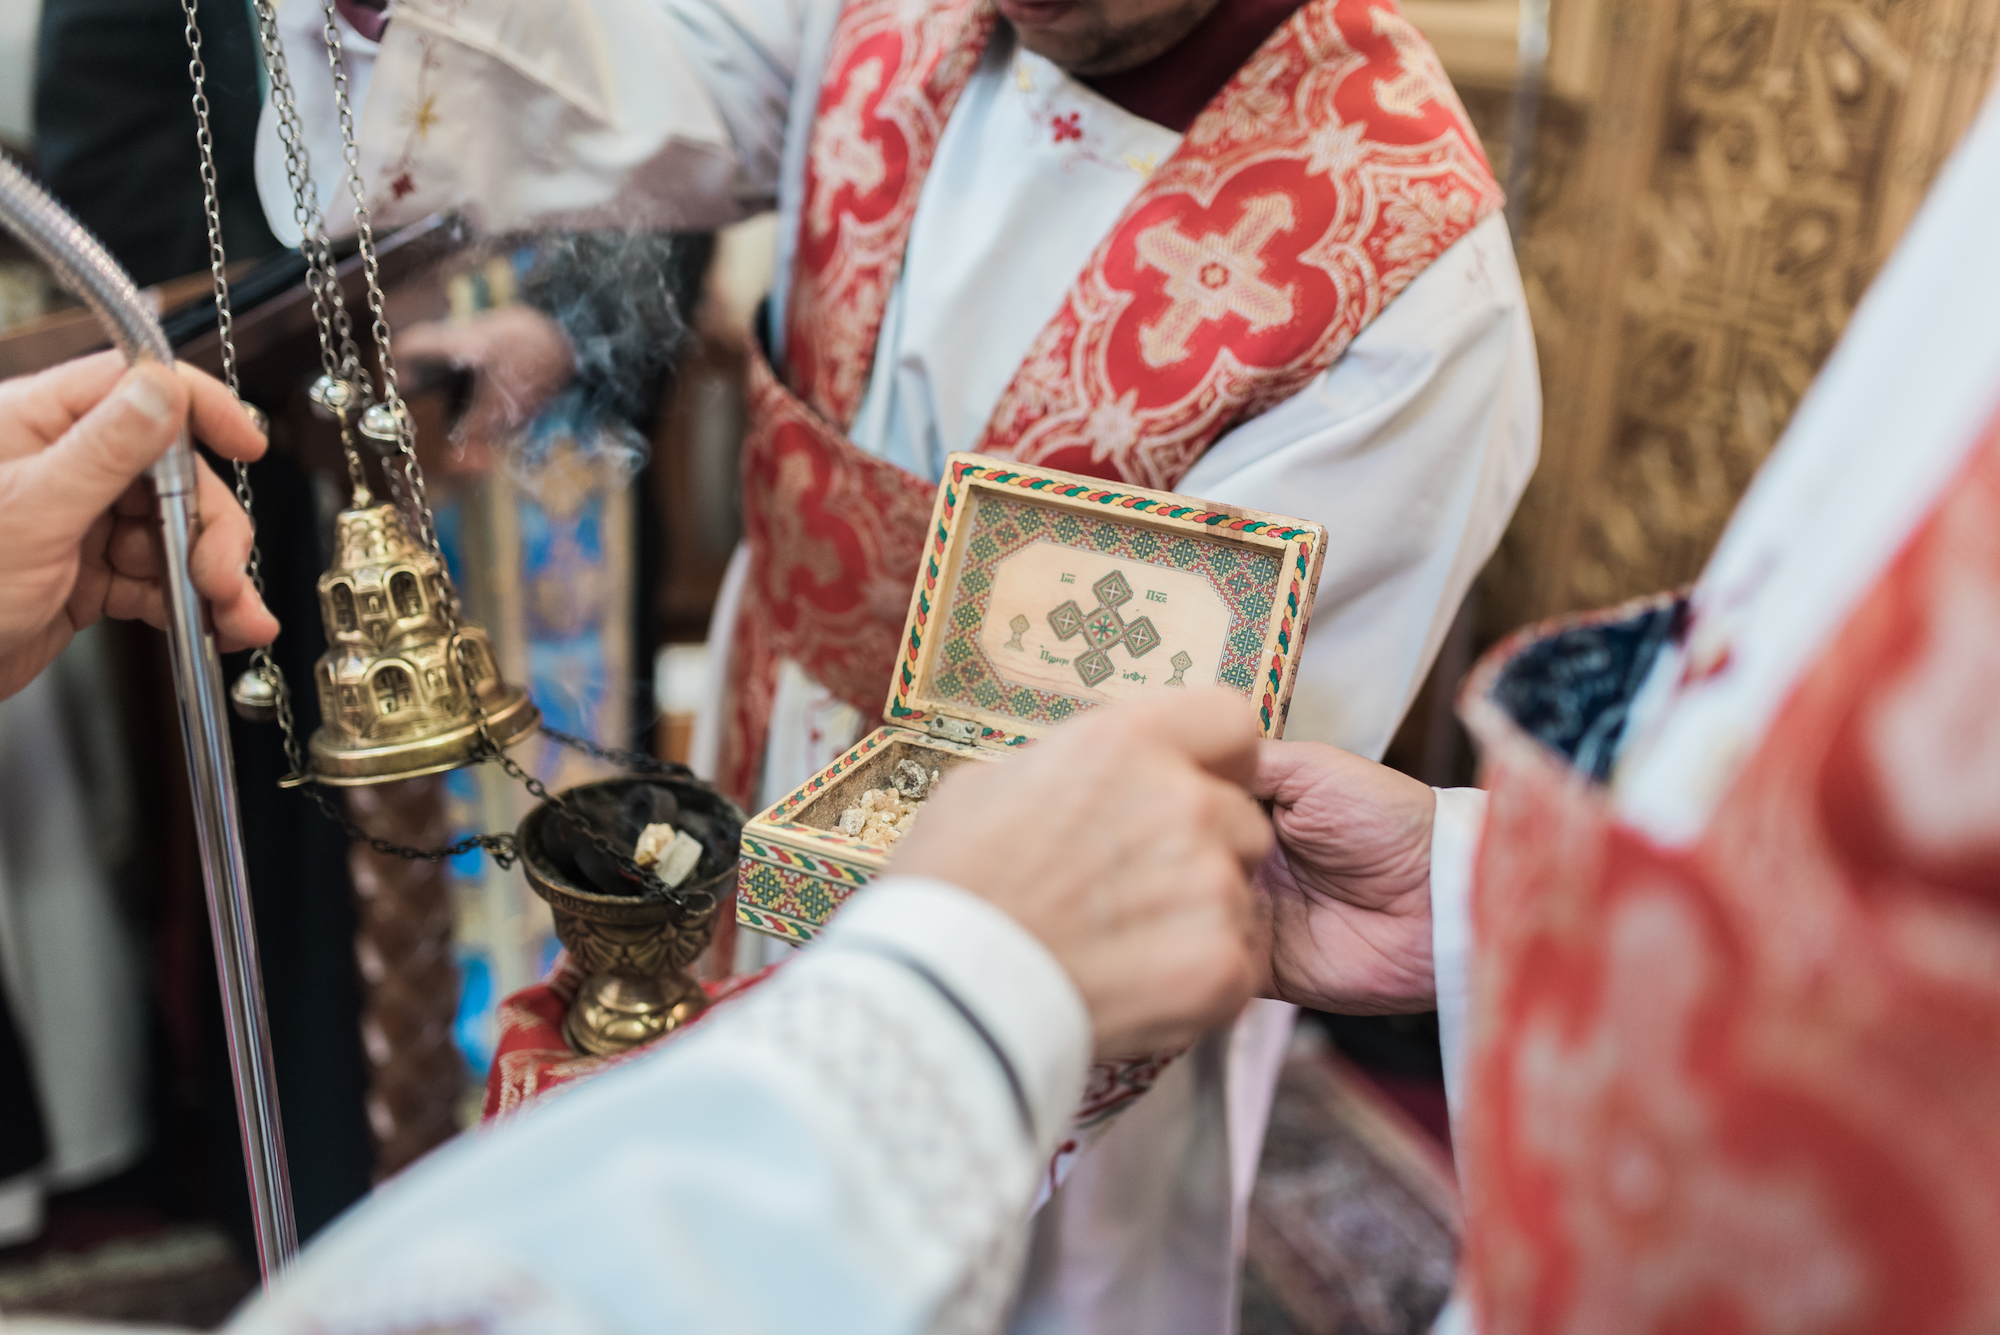 Déclarations sur le caractère inacceptable du « mariage » entre personnes du même sexe de la part du Patriarche copte orthodoxe